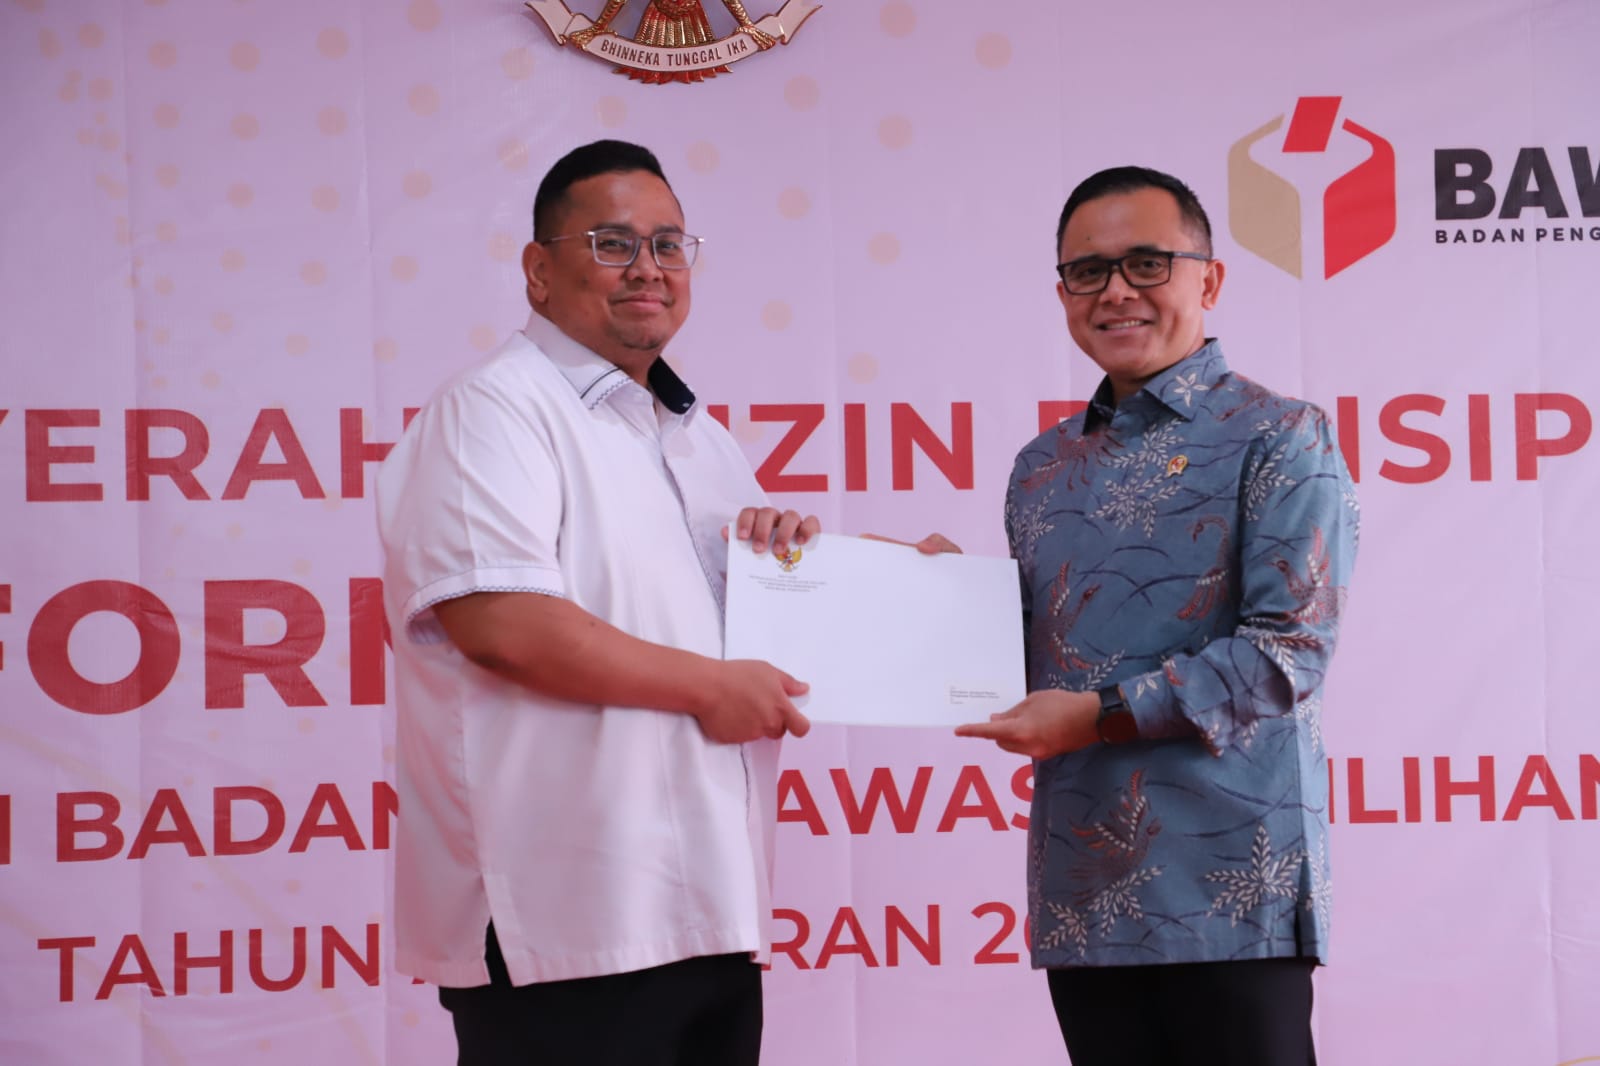 Abdullah Azwar Anas, Menteri PANRB, telah menyerahkan izin prinsip untuk formasi CASN Bawaslu kepada Rahmat Bagja, Ketua Bawaslu, pada hari Kamis (18/04) di Jakarta.